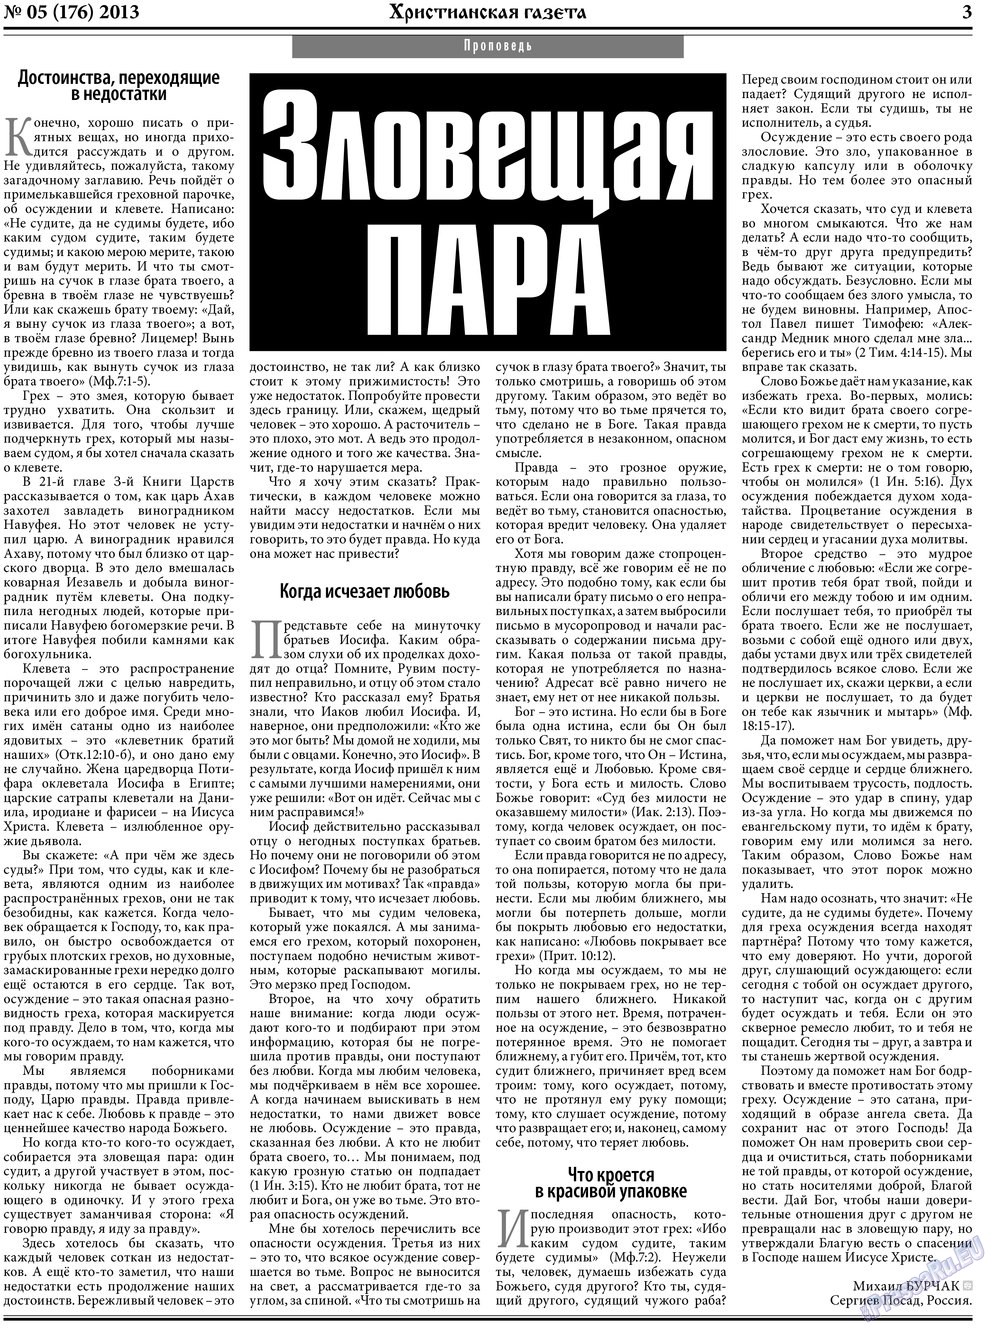 Hristianskaja gazeta (Zeitung). 2013 Jahr, Ausgabe 5, Seite 3